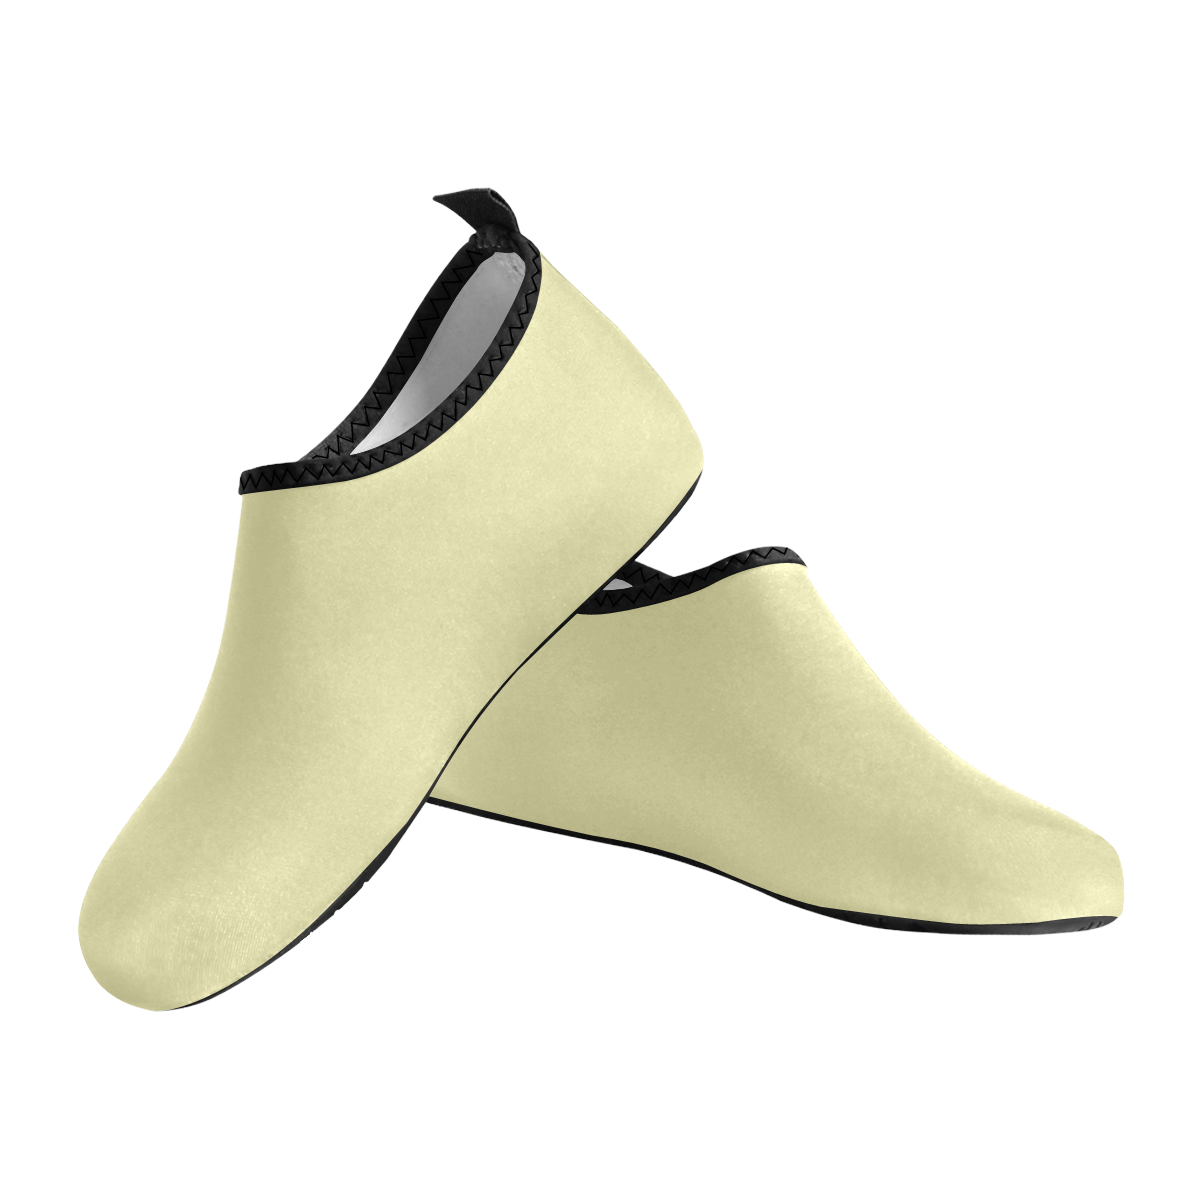 color pale goldenrod Men's Slip-On Water Shoes (Model 056)